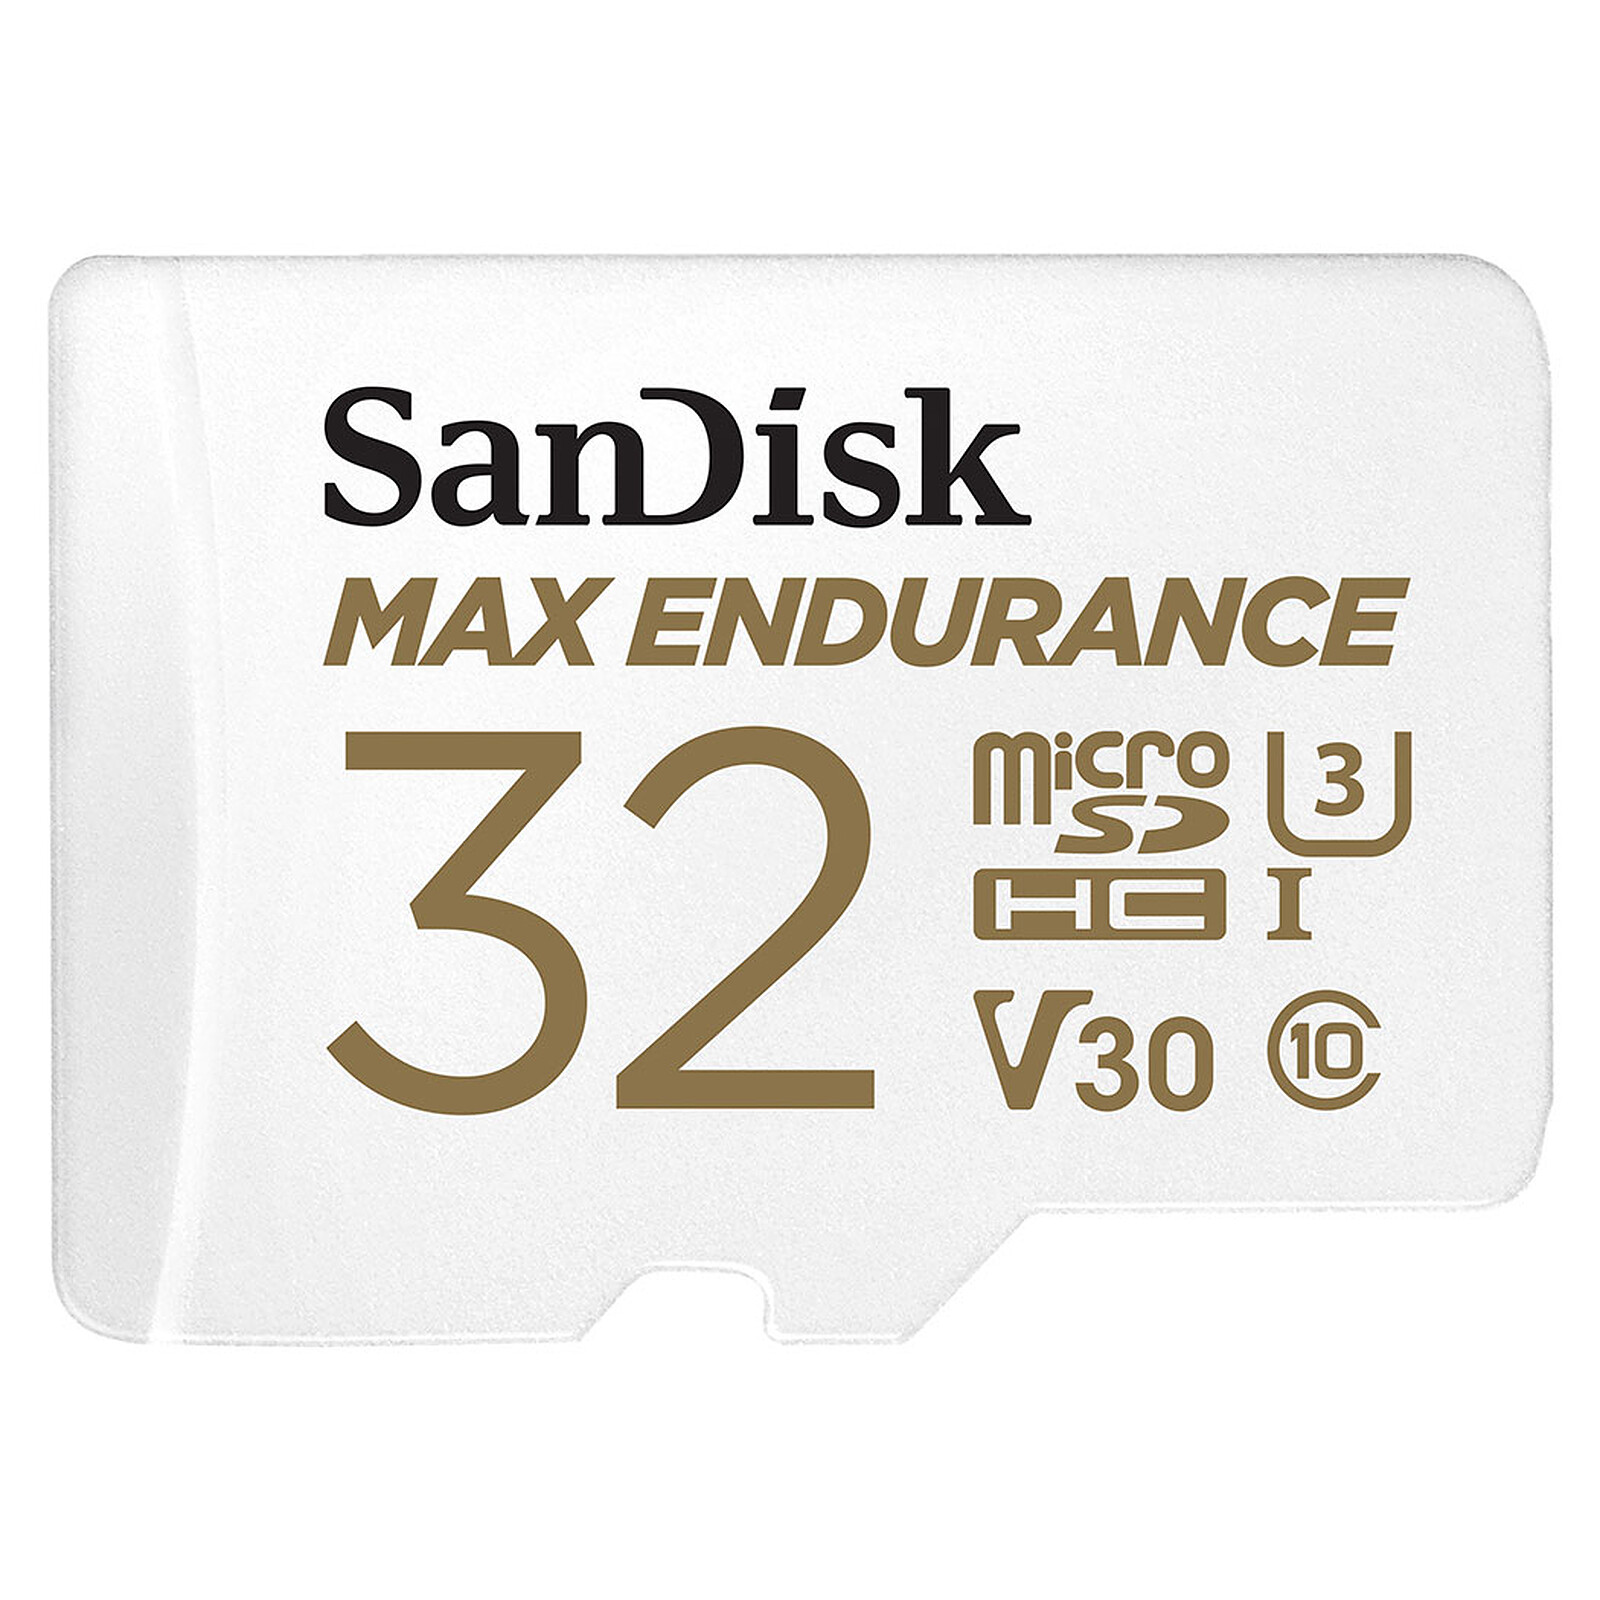 SanDisk Max Endurance microSDHC UHS-I U3 V30 32GB SD - Memory card on LDLC